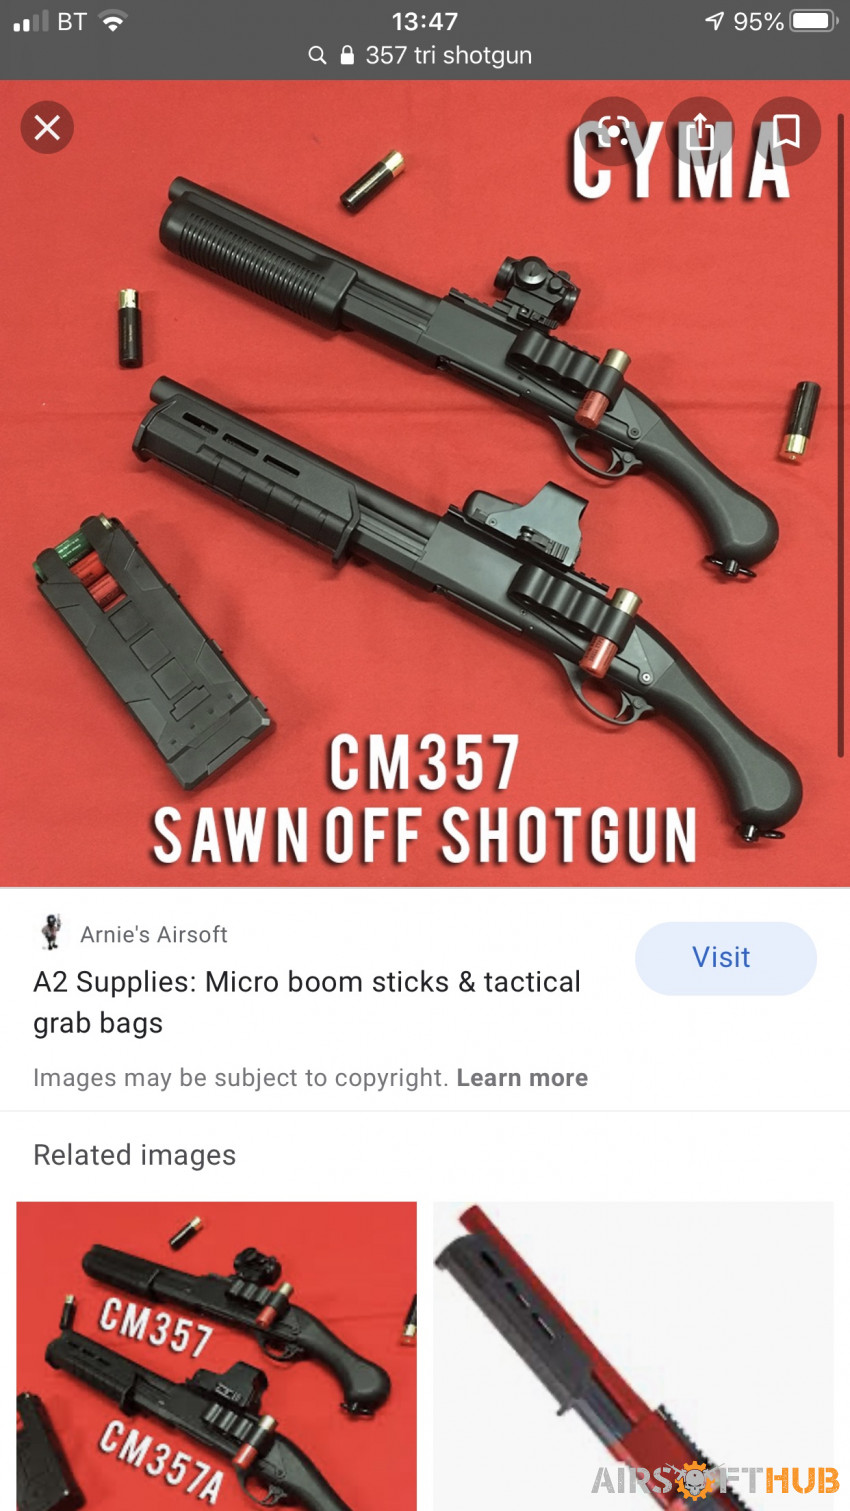 Cyma 357 tri shotgun Sawed off - Used airsoft equipment